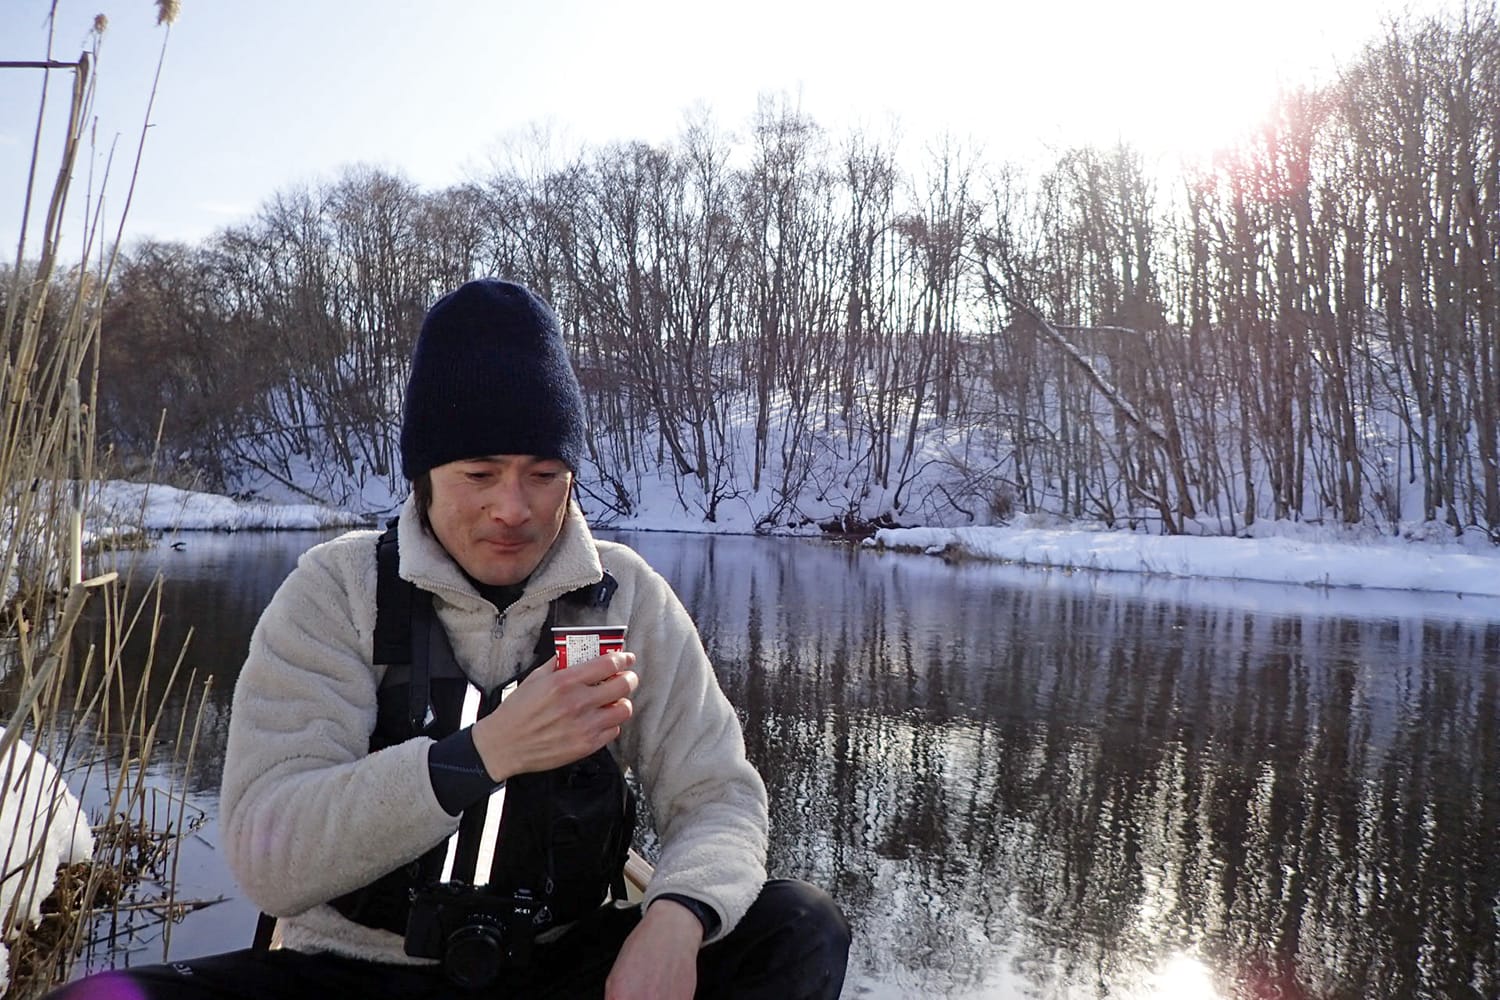 冬の美々川の支流パンケナイ川にてカヌーの上でコーヒーを飲む